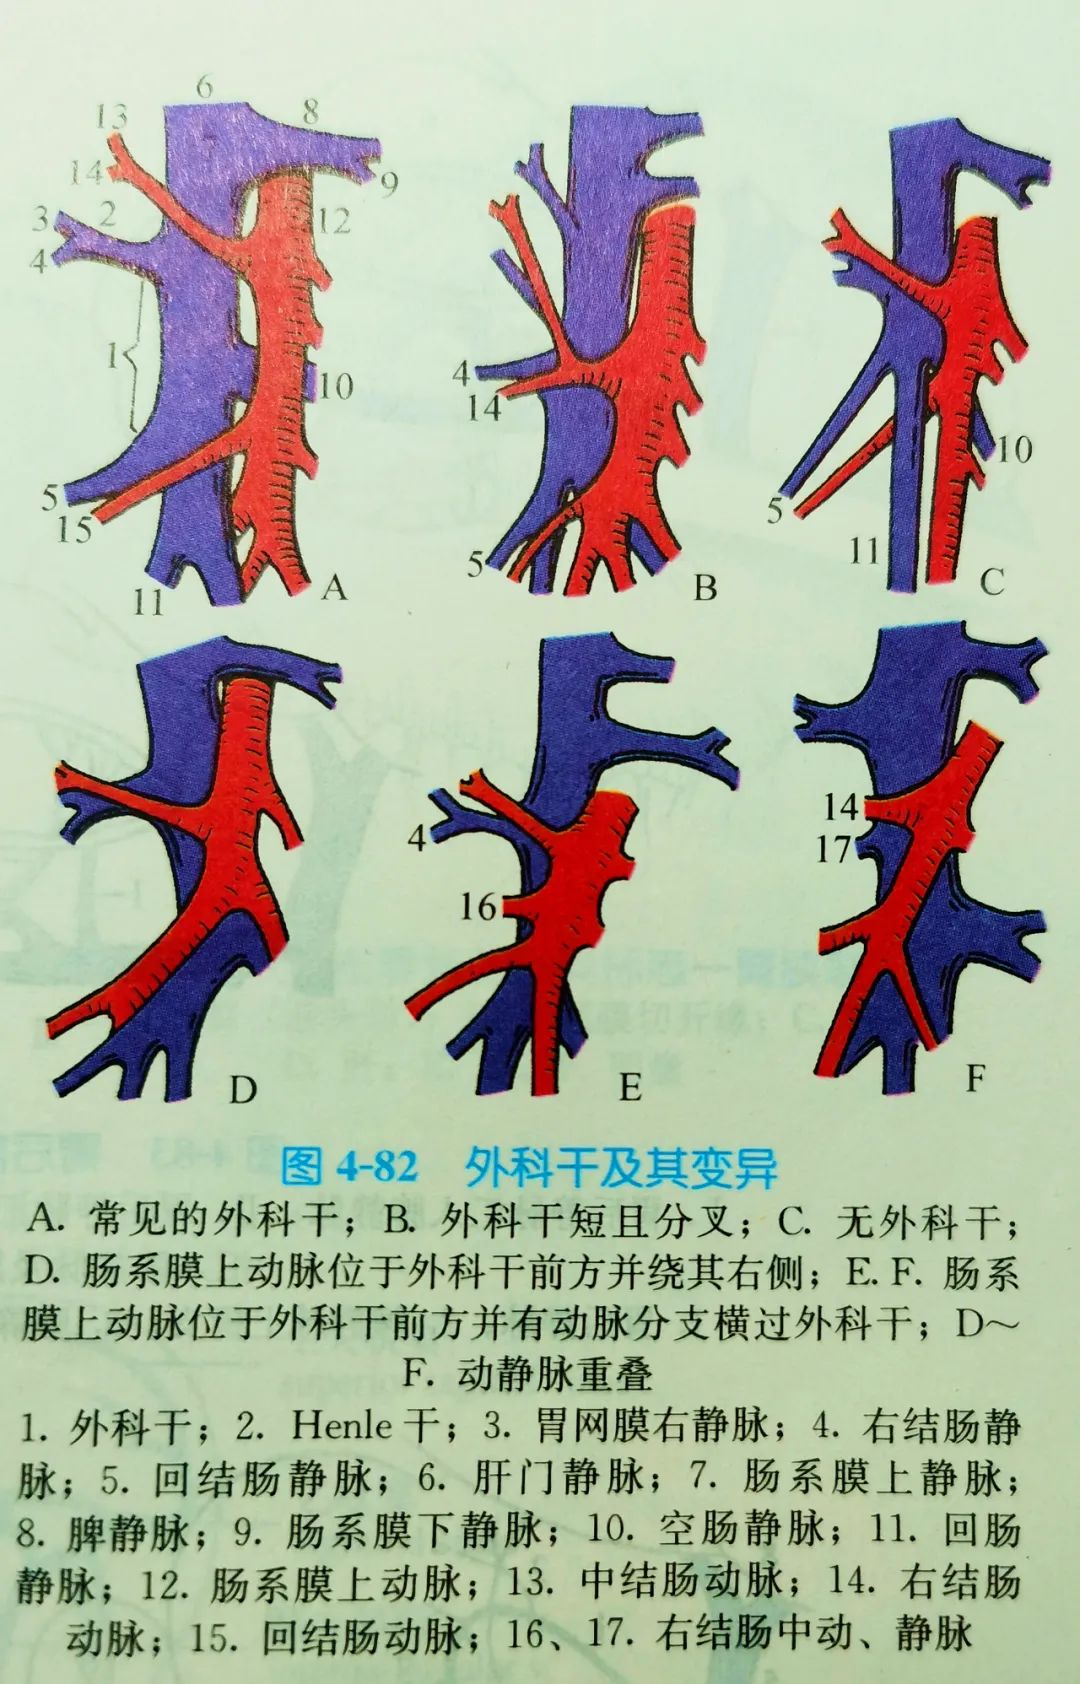 右半结肠手术的重要解剖标志:主要血管标志